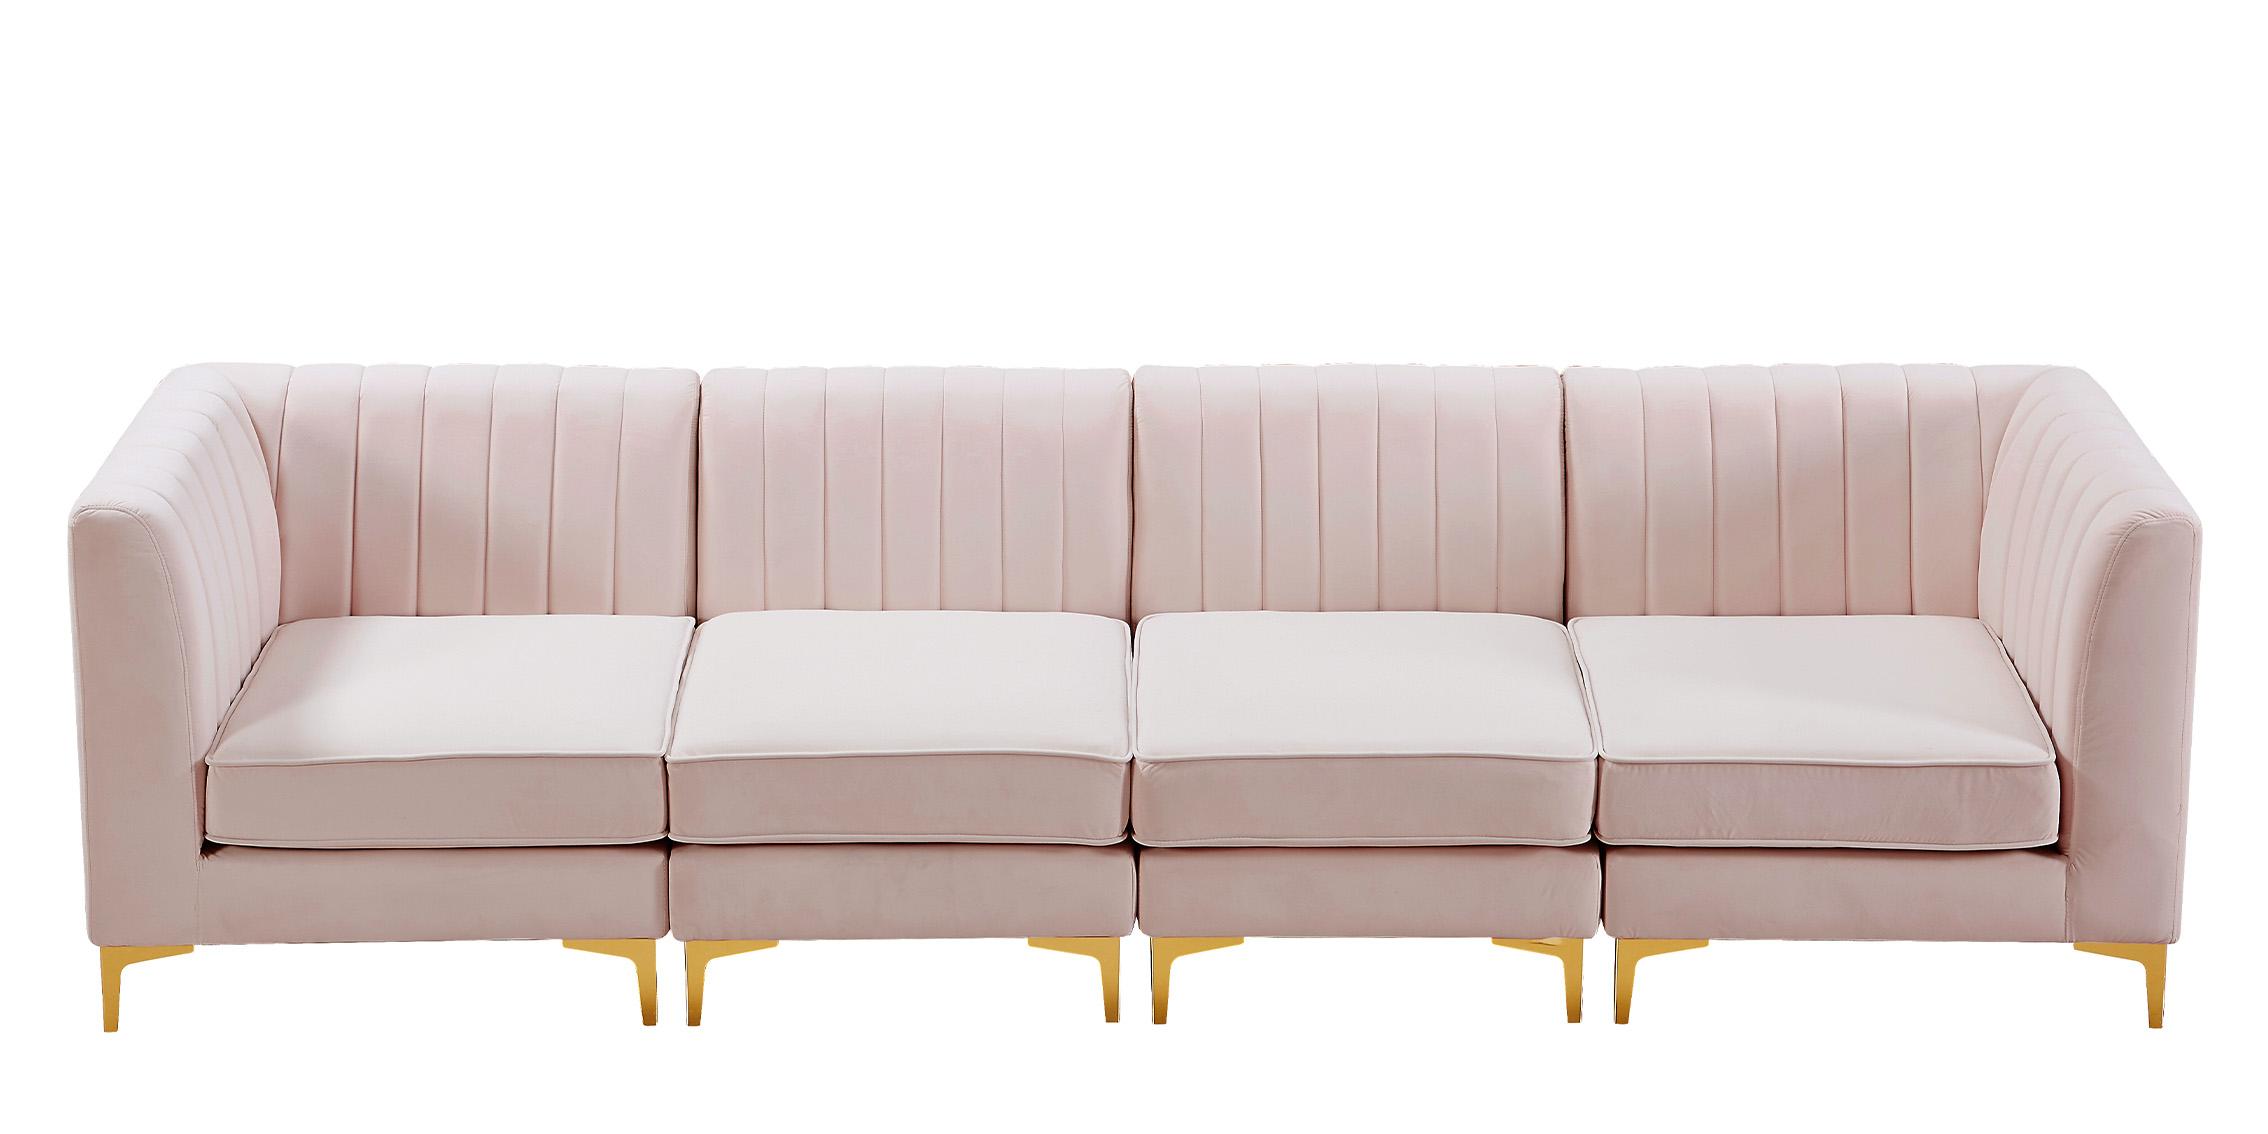 

    
Meridian Furniture ALINA 604Pink-S119 Modular Sectional Sofa Pink 604Pink-S119
